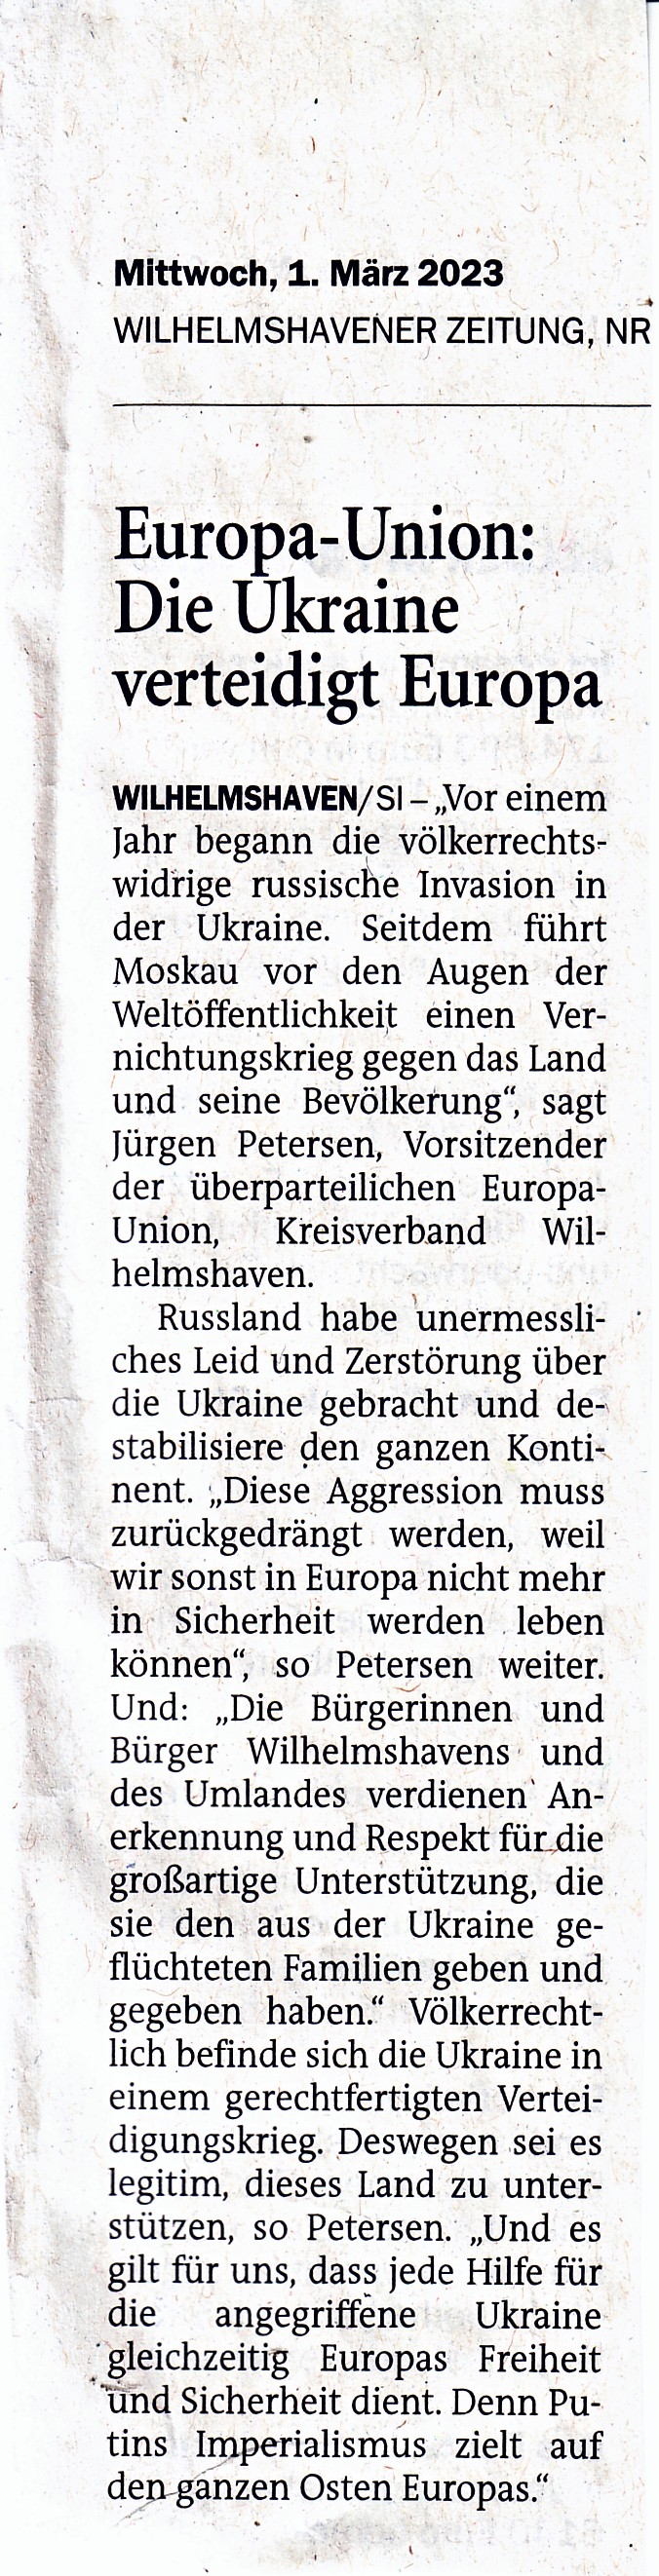 Wilhelmshavener Zeitung vom 1. März 2023